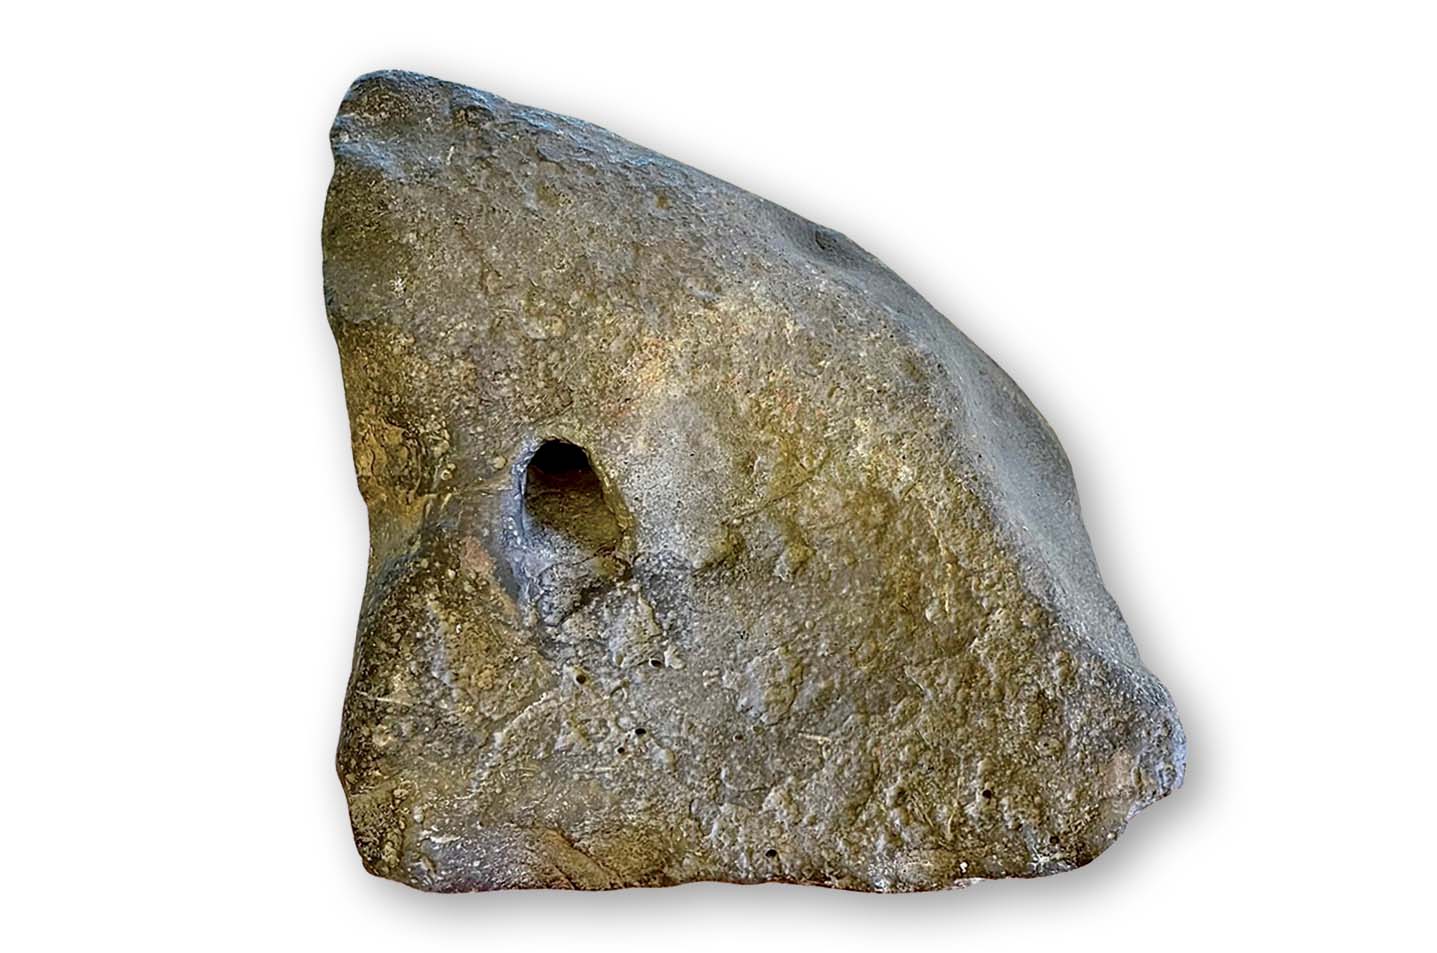 Chiếc kèn đá lớn trong cặp bảo vật kèn đá Tuy An  đang được lưu giữ tại Bảo tàng tỉnh Phú Yên